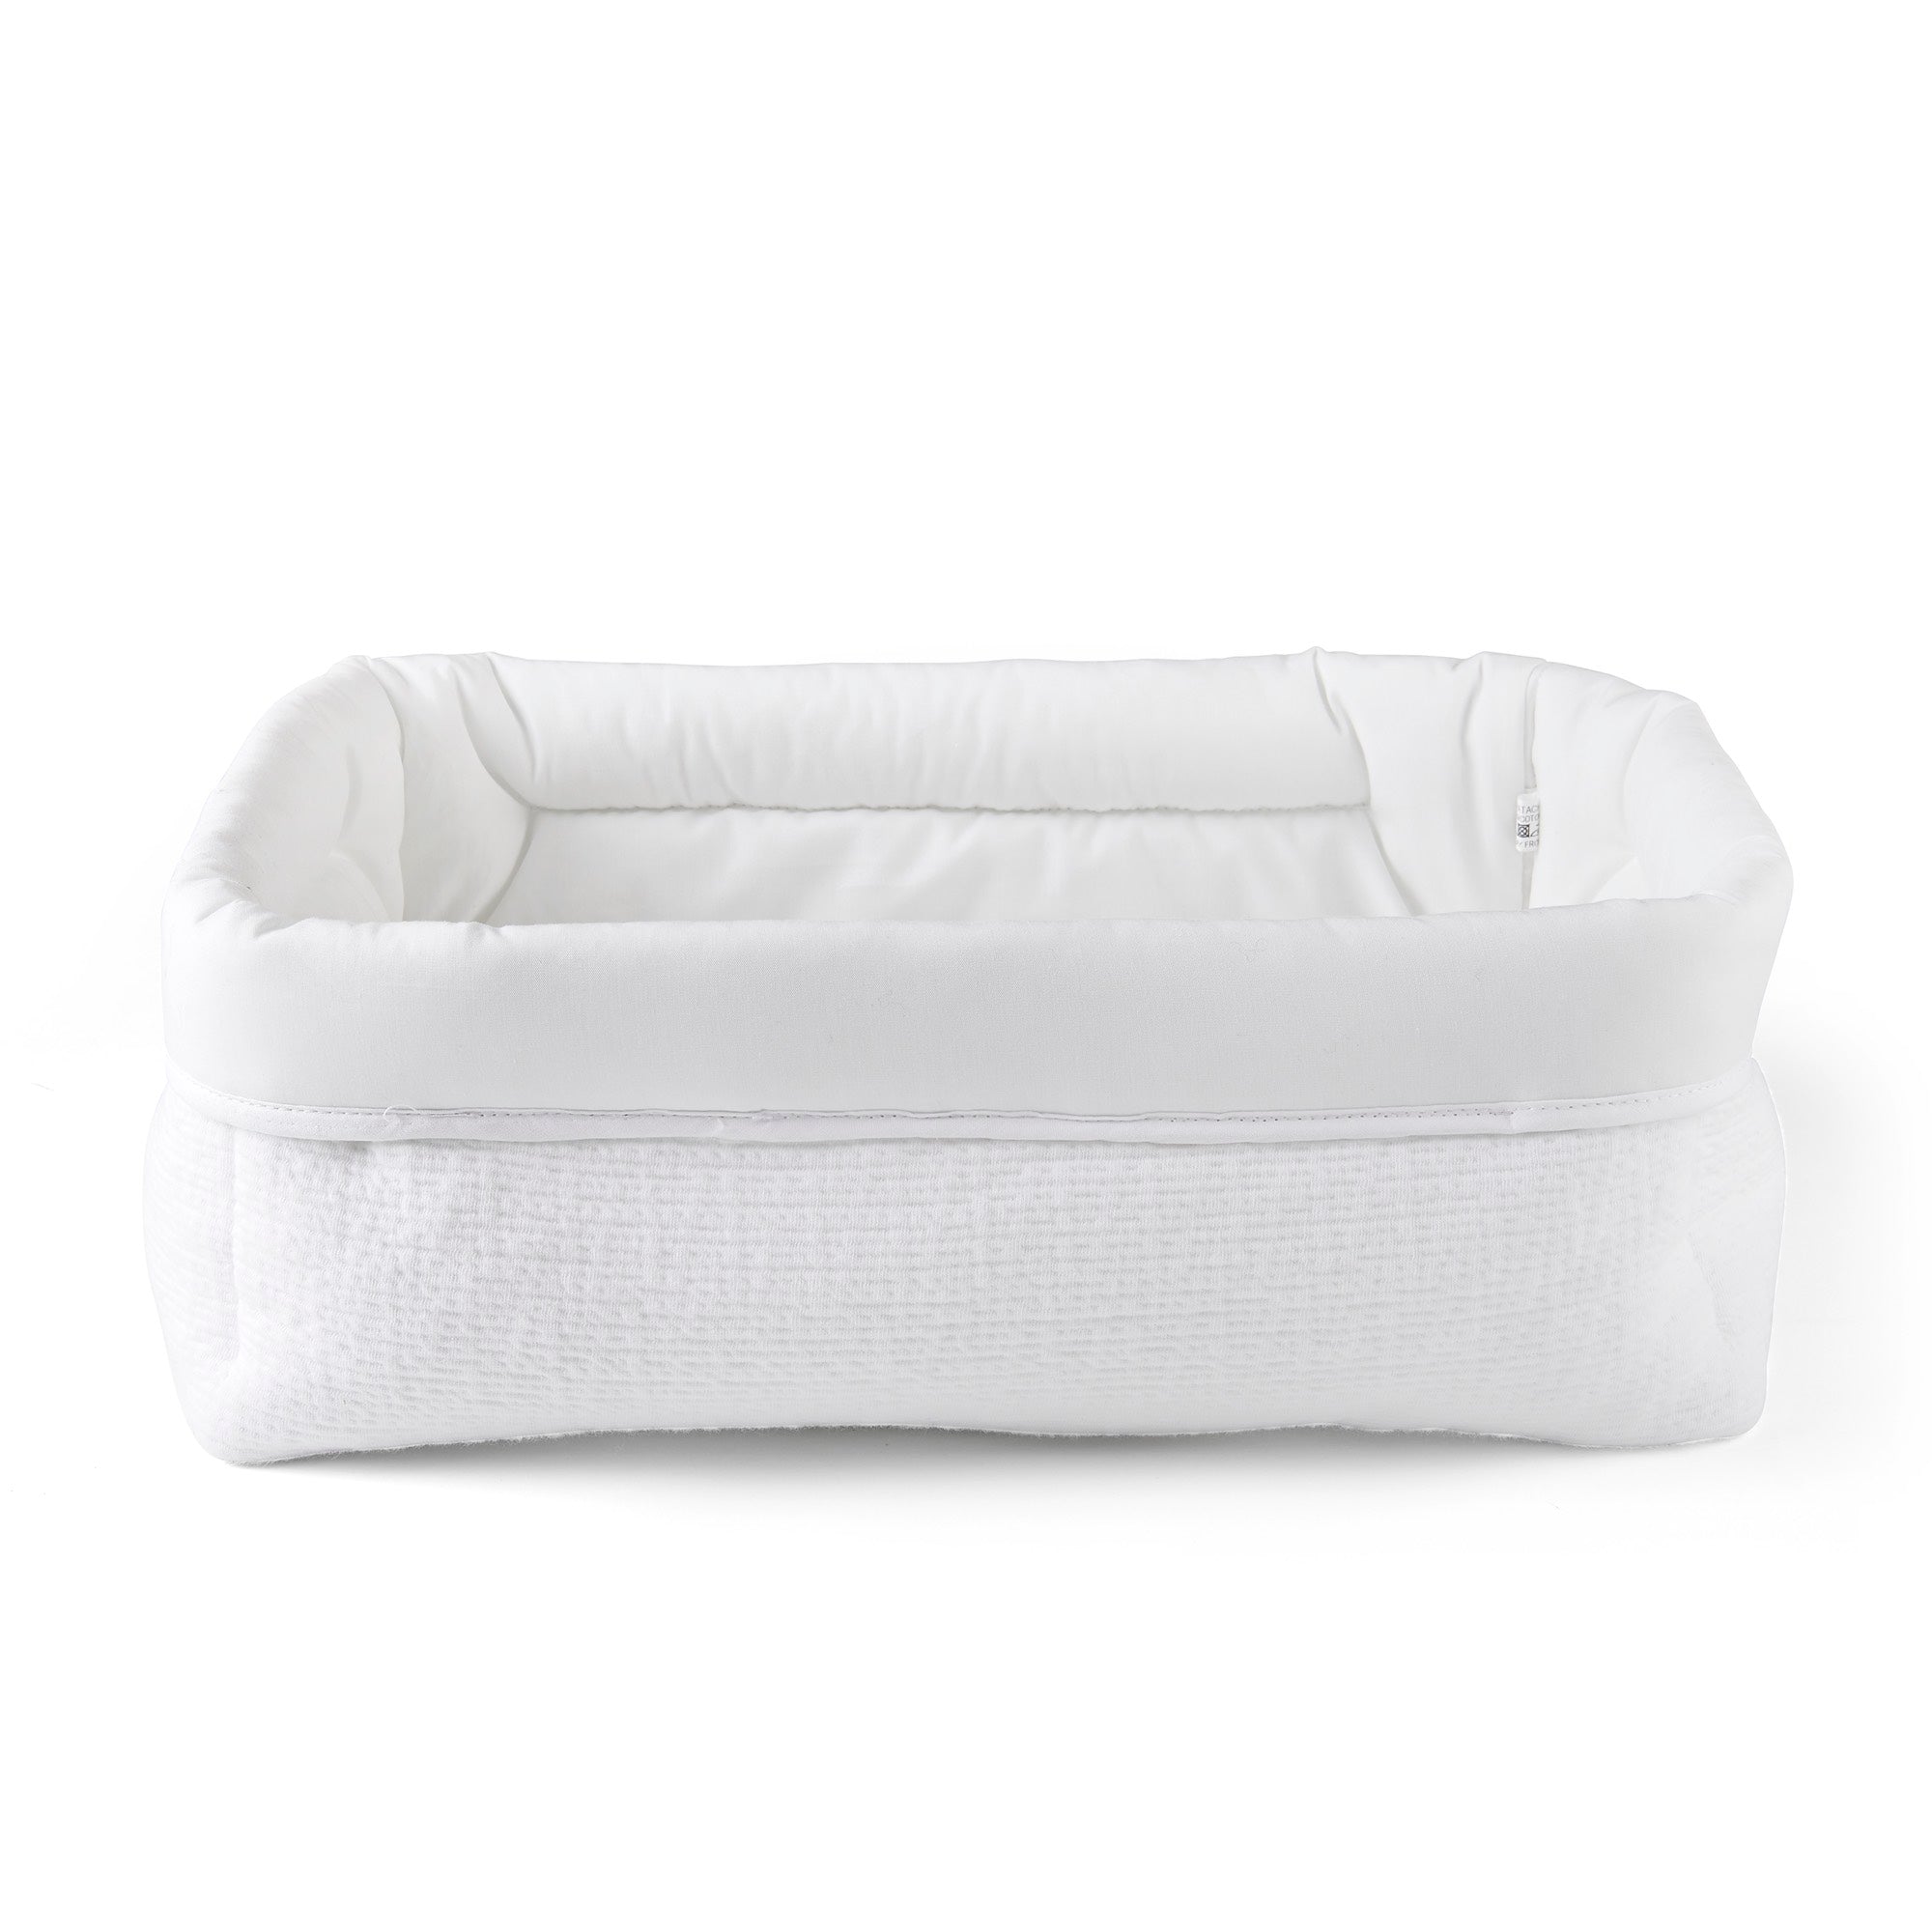 Theophile & Patachou Baby Rectangular Toilet Basket - Cotton White